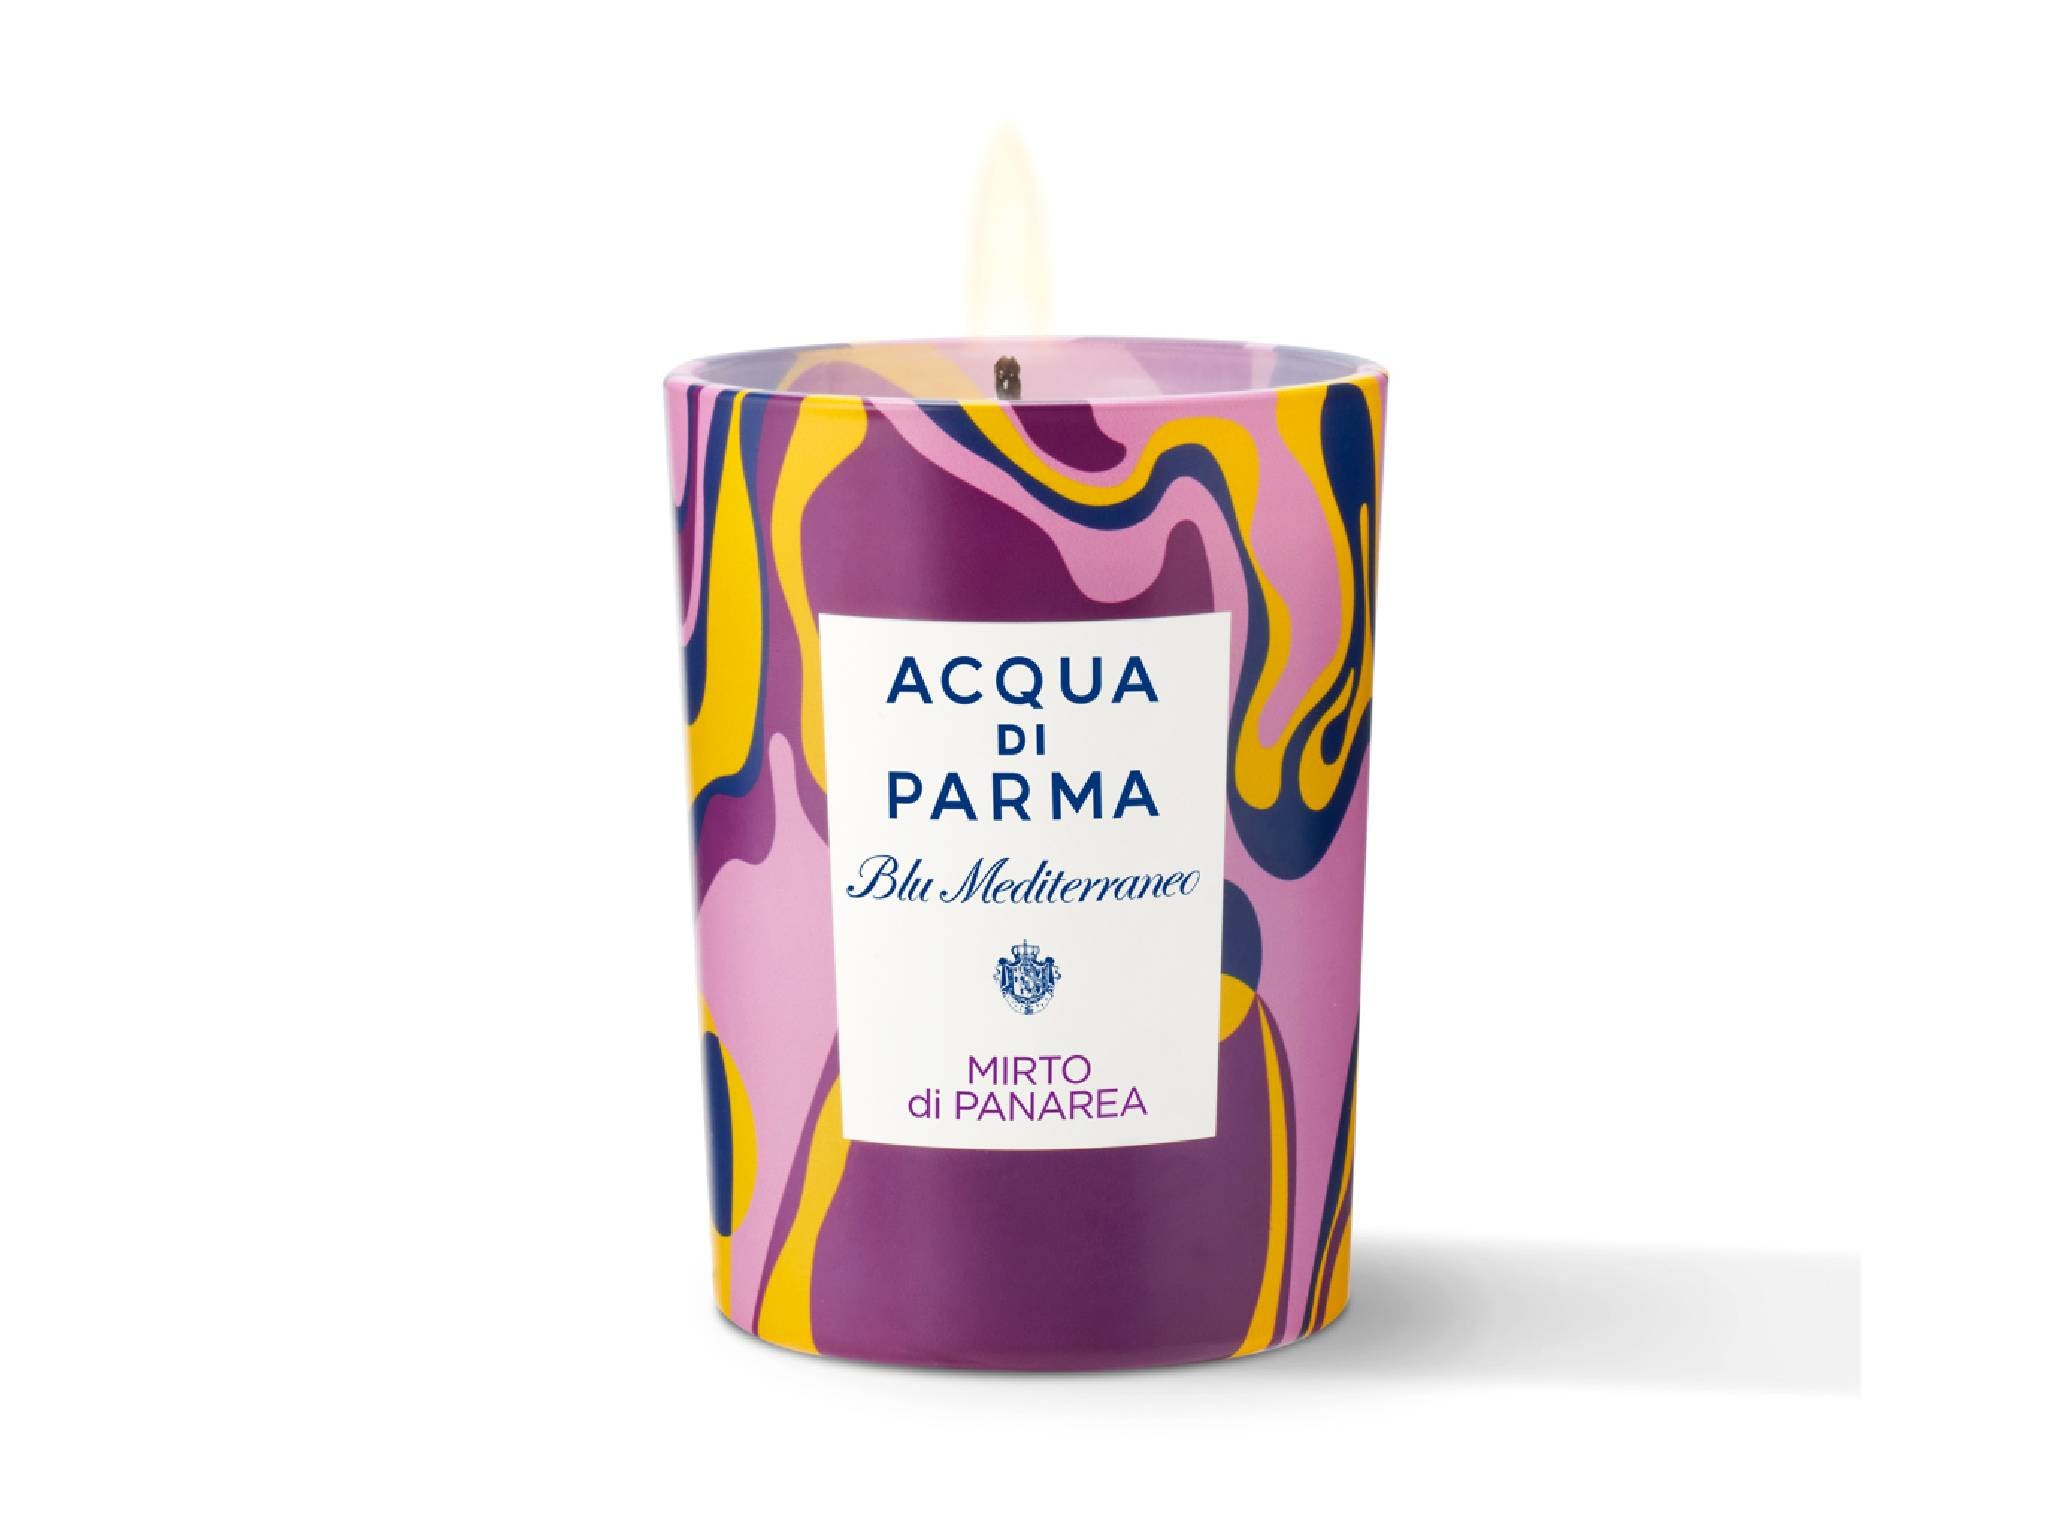 Acqua di Parma blu Mediterraneo mirto di panarea limited-edition scented candle.jpg